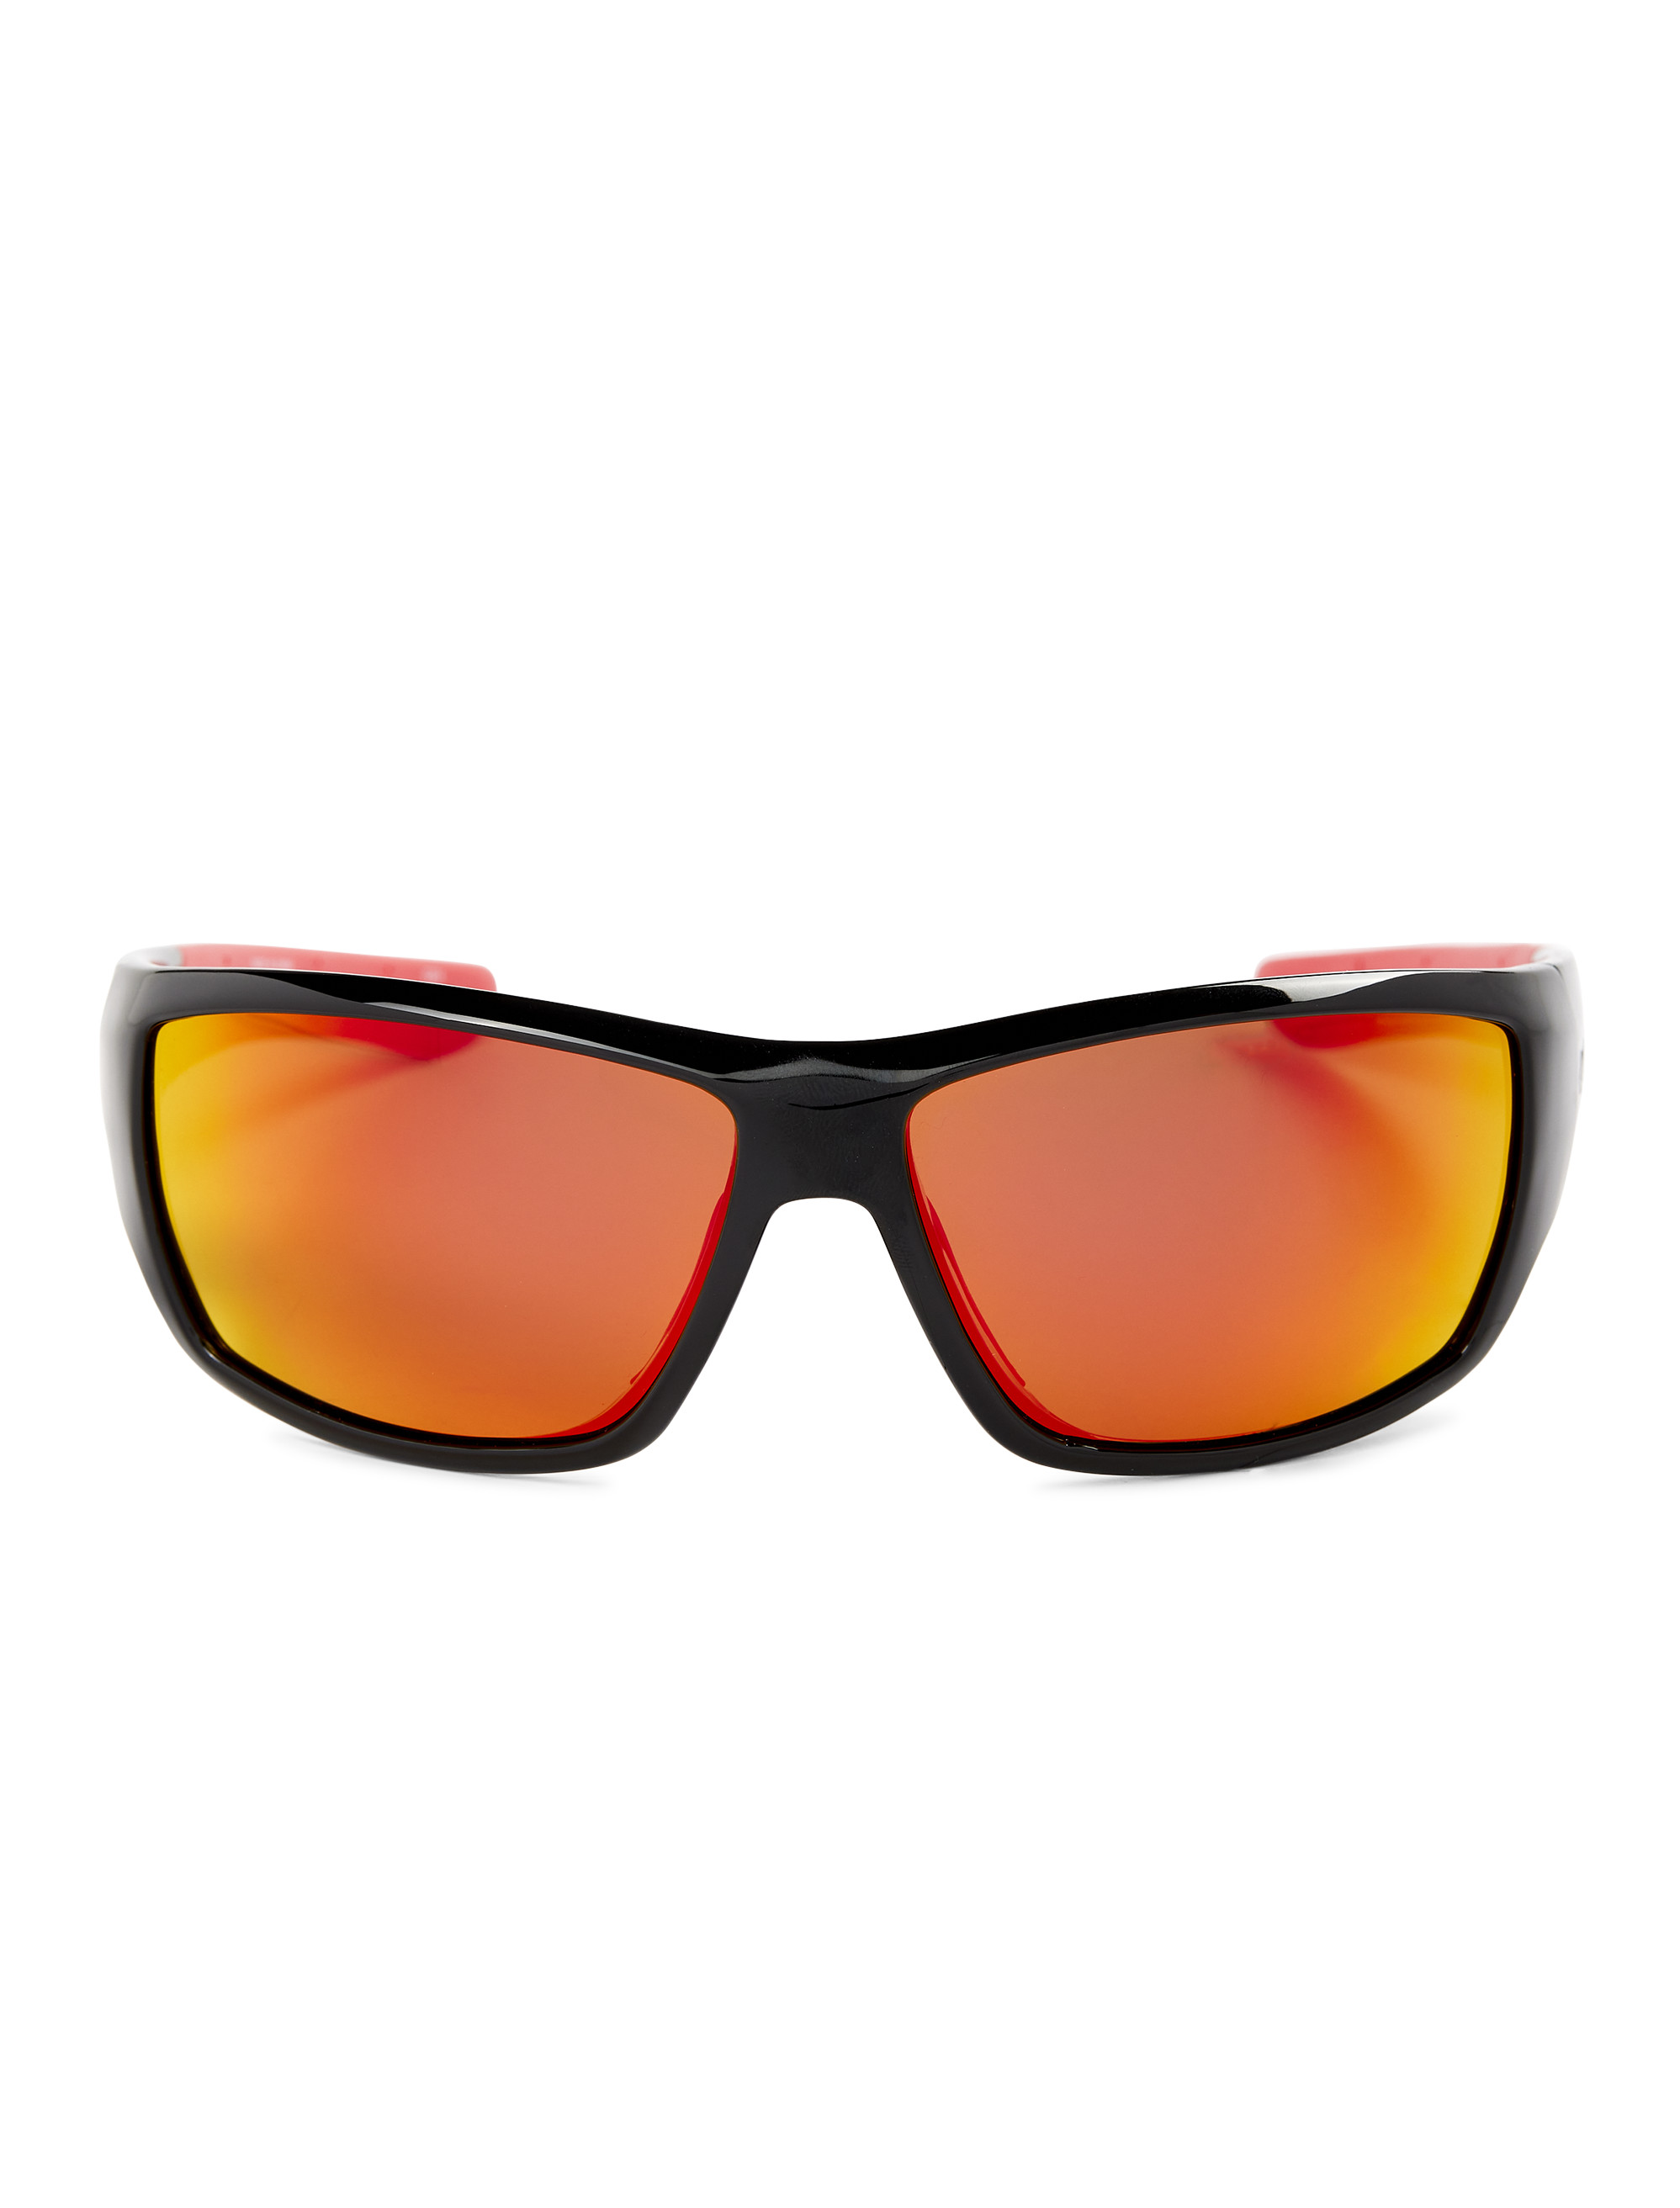 Columbia Utilizer Polarized Sunglasses, Men's, Black/Red